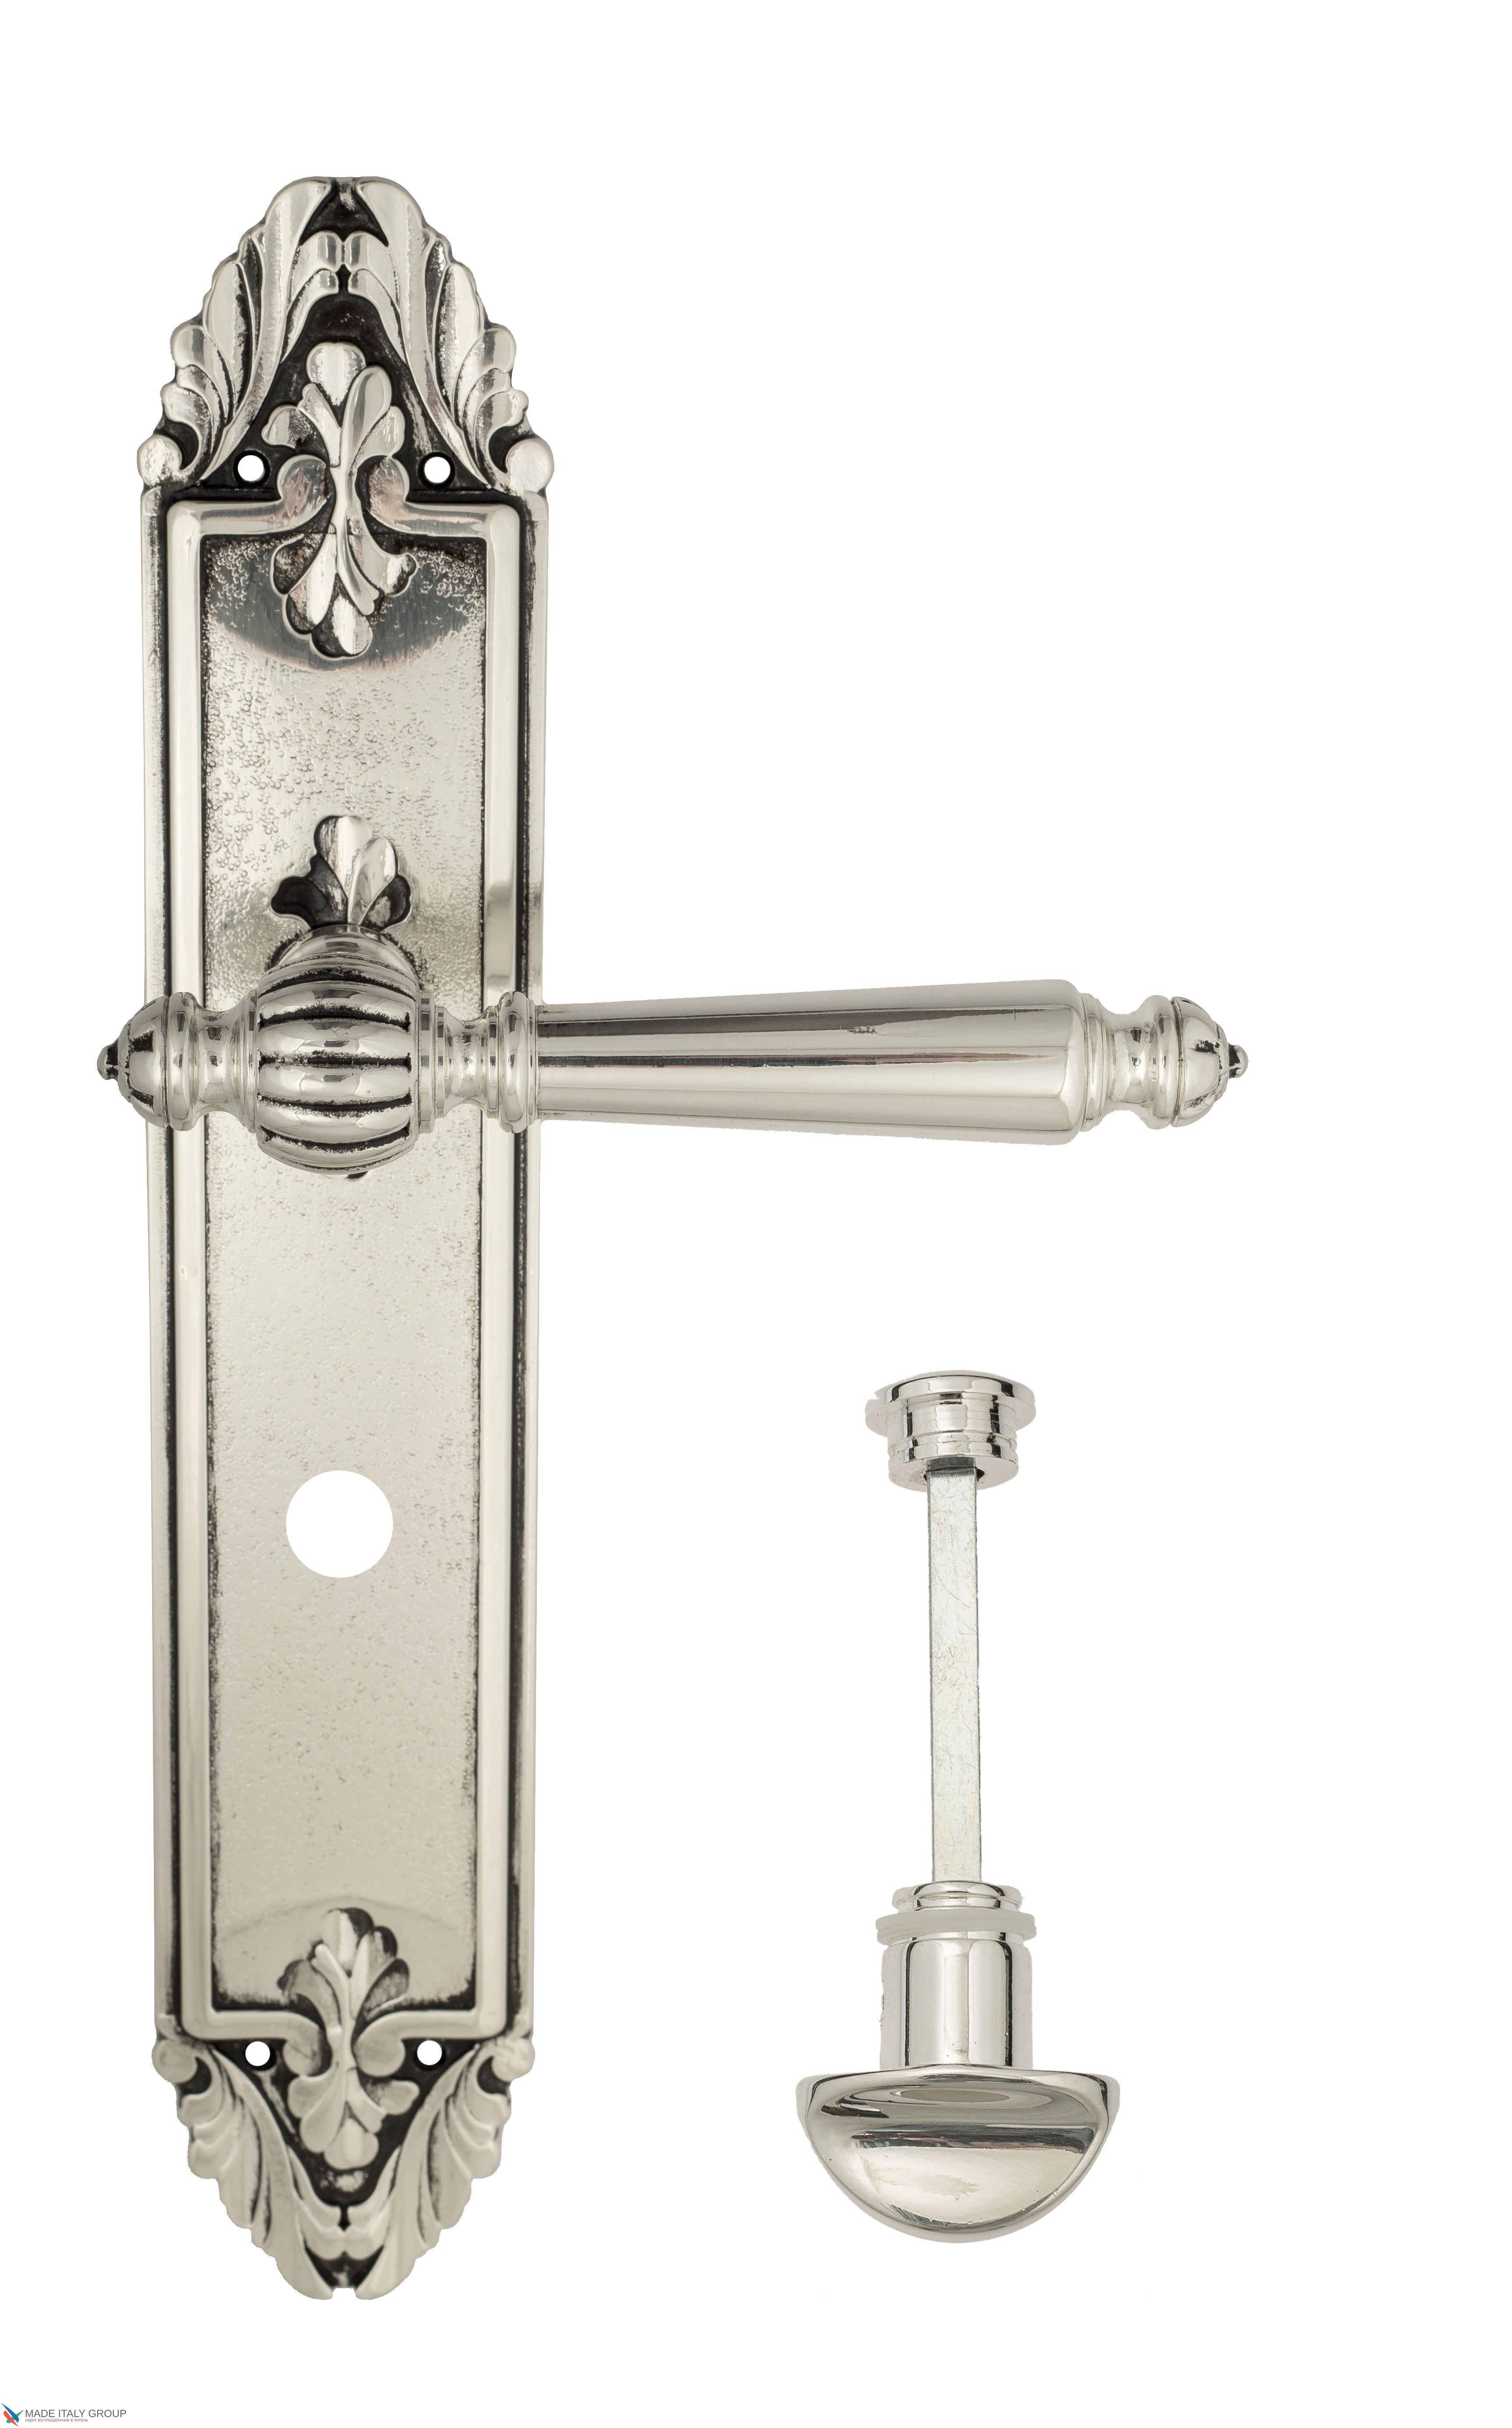 Дверная ручка Venezia "PELLESTRINA" WC-2 на планке PL90 натуральное серебро + черный